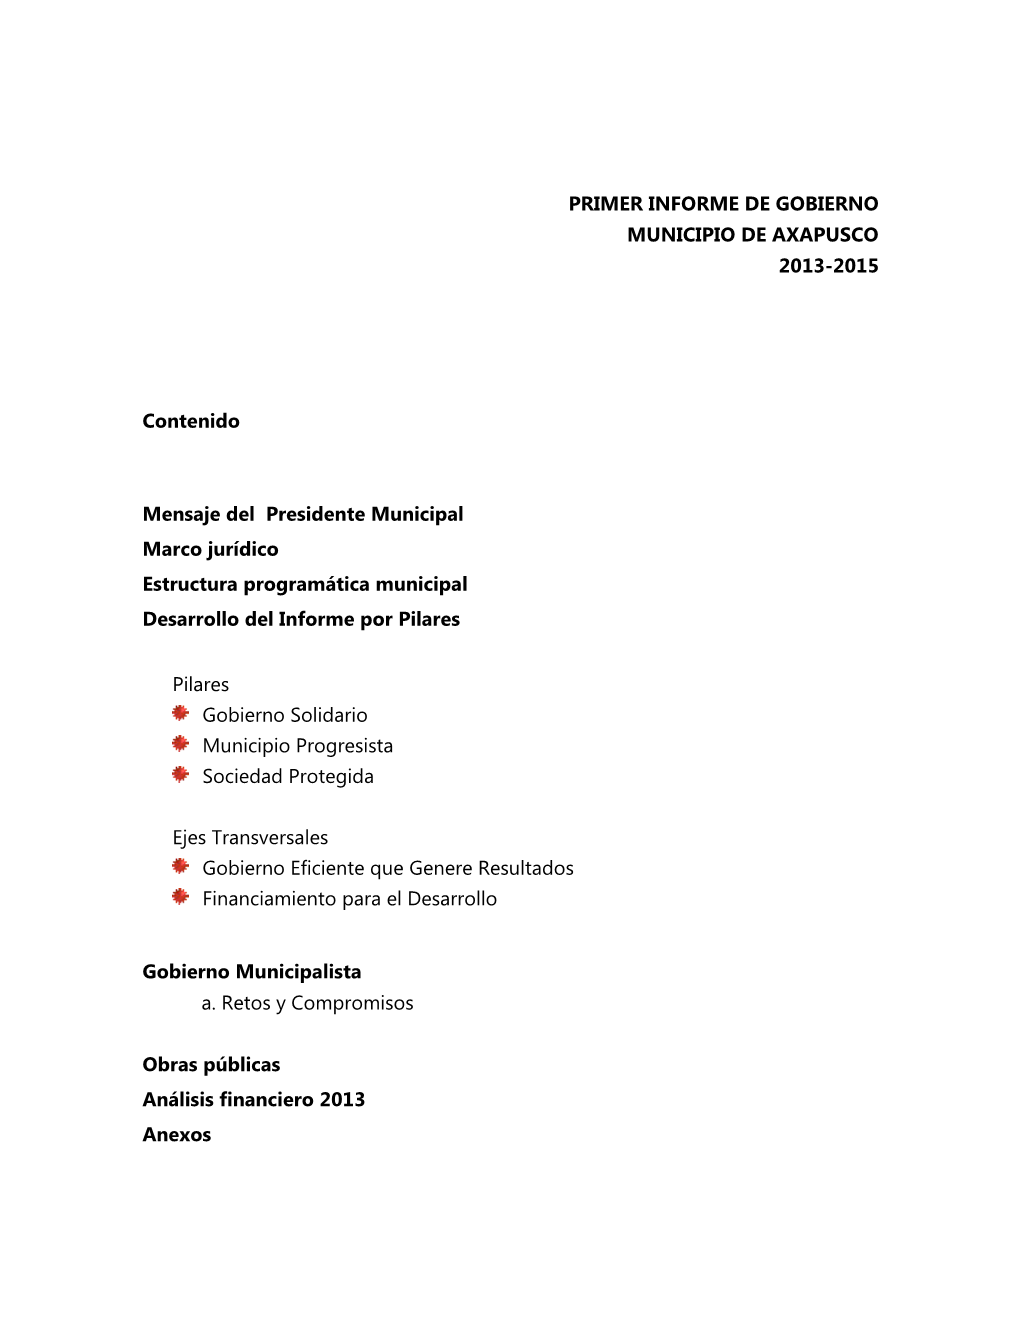 PRIMER INFORME DE GOBIERNO MUNICIPIO DE AXAPUSCO 2013-2015 Contenido Mensaje Del Presidente Municipal Marco Jurídico Estruct